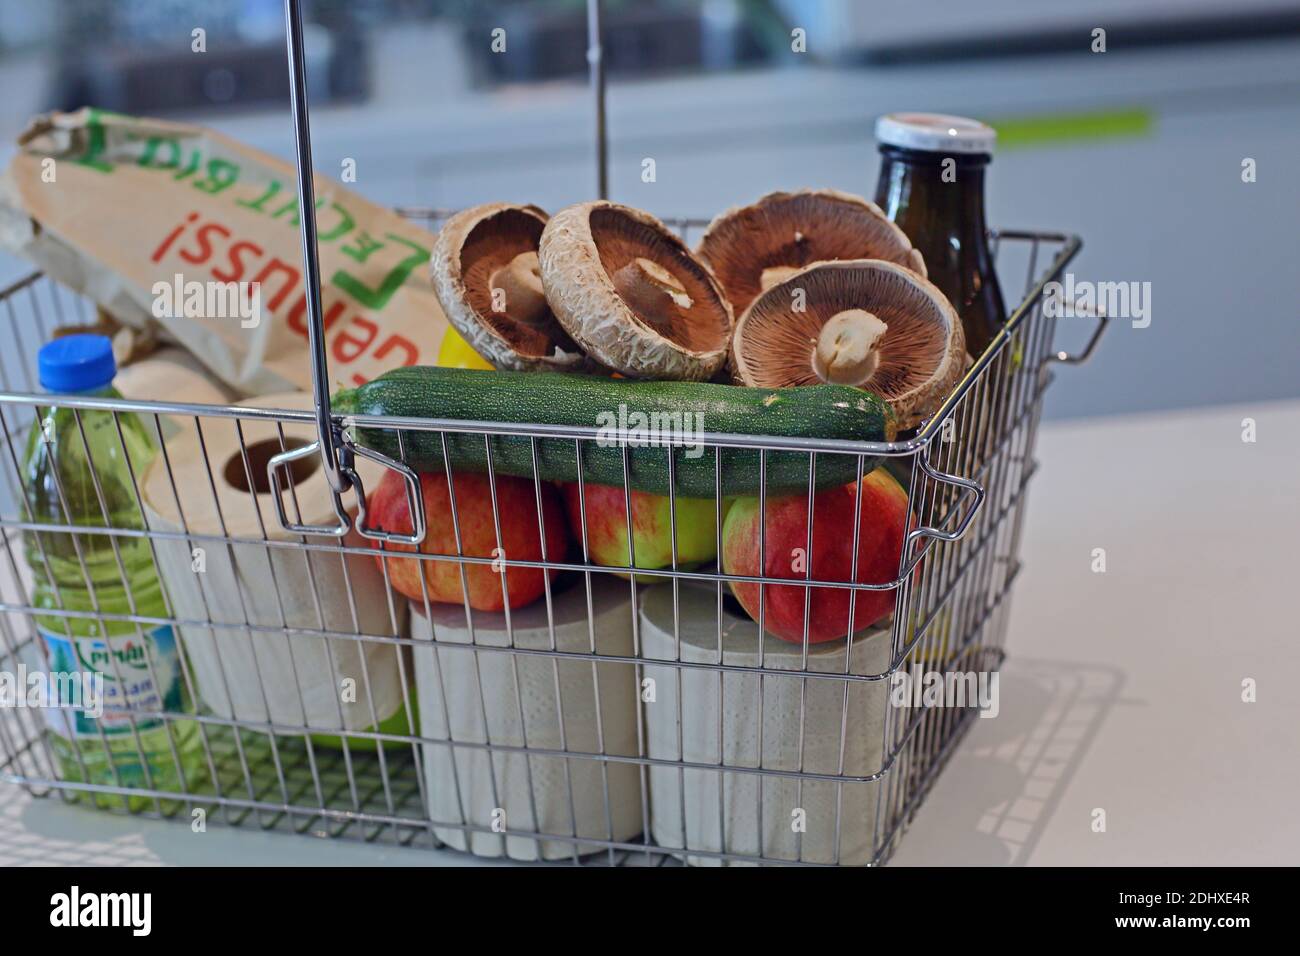 Deutschland / Berlin /Original Unverpackt, ein deutscher Concept Store, der Lebensmittel  ohne Verpackung verkauft Stockfotografie - Alamy